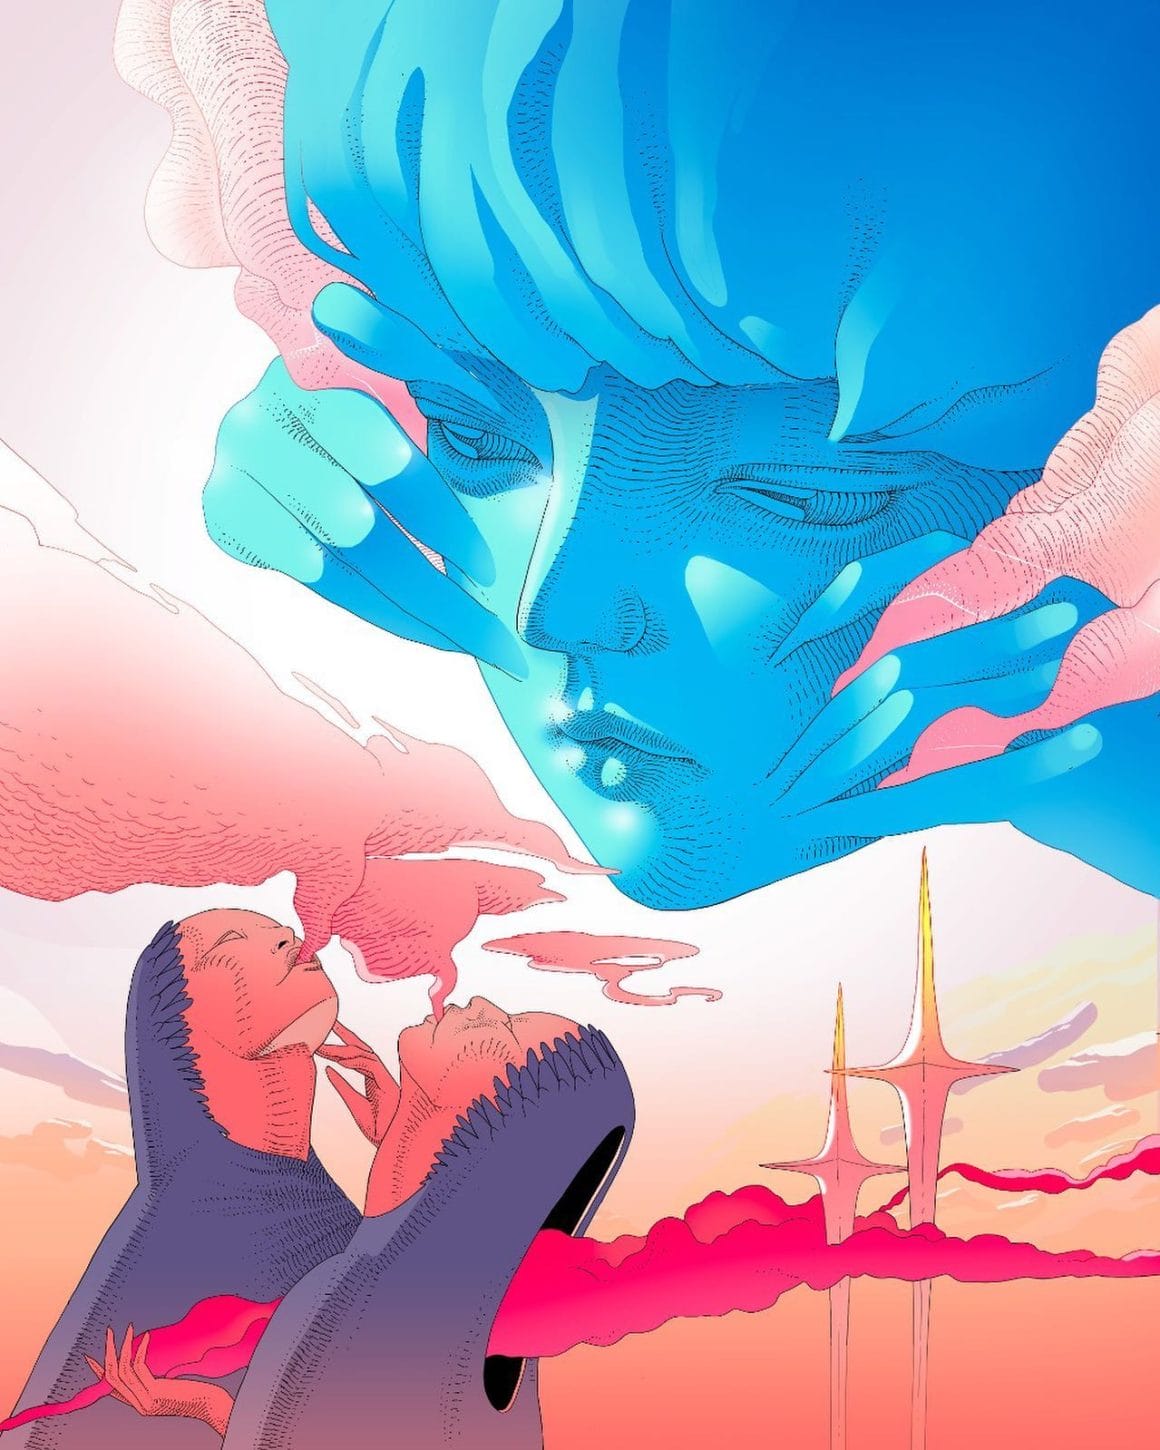 Oeuvre virtuelle représentant le visage géant d'une femme bleue sortant des cieux. Elle observe deux femmes jumelles en train de fumer les nuages roses